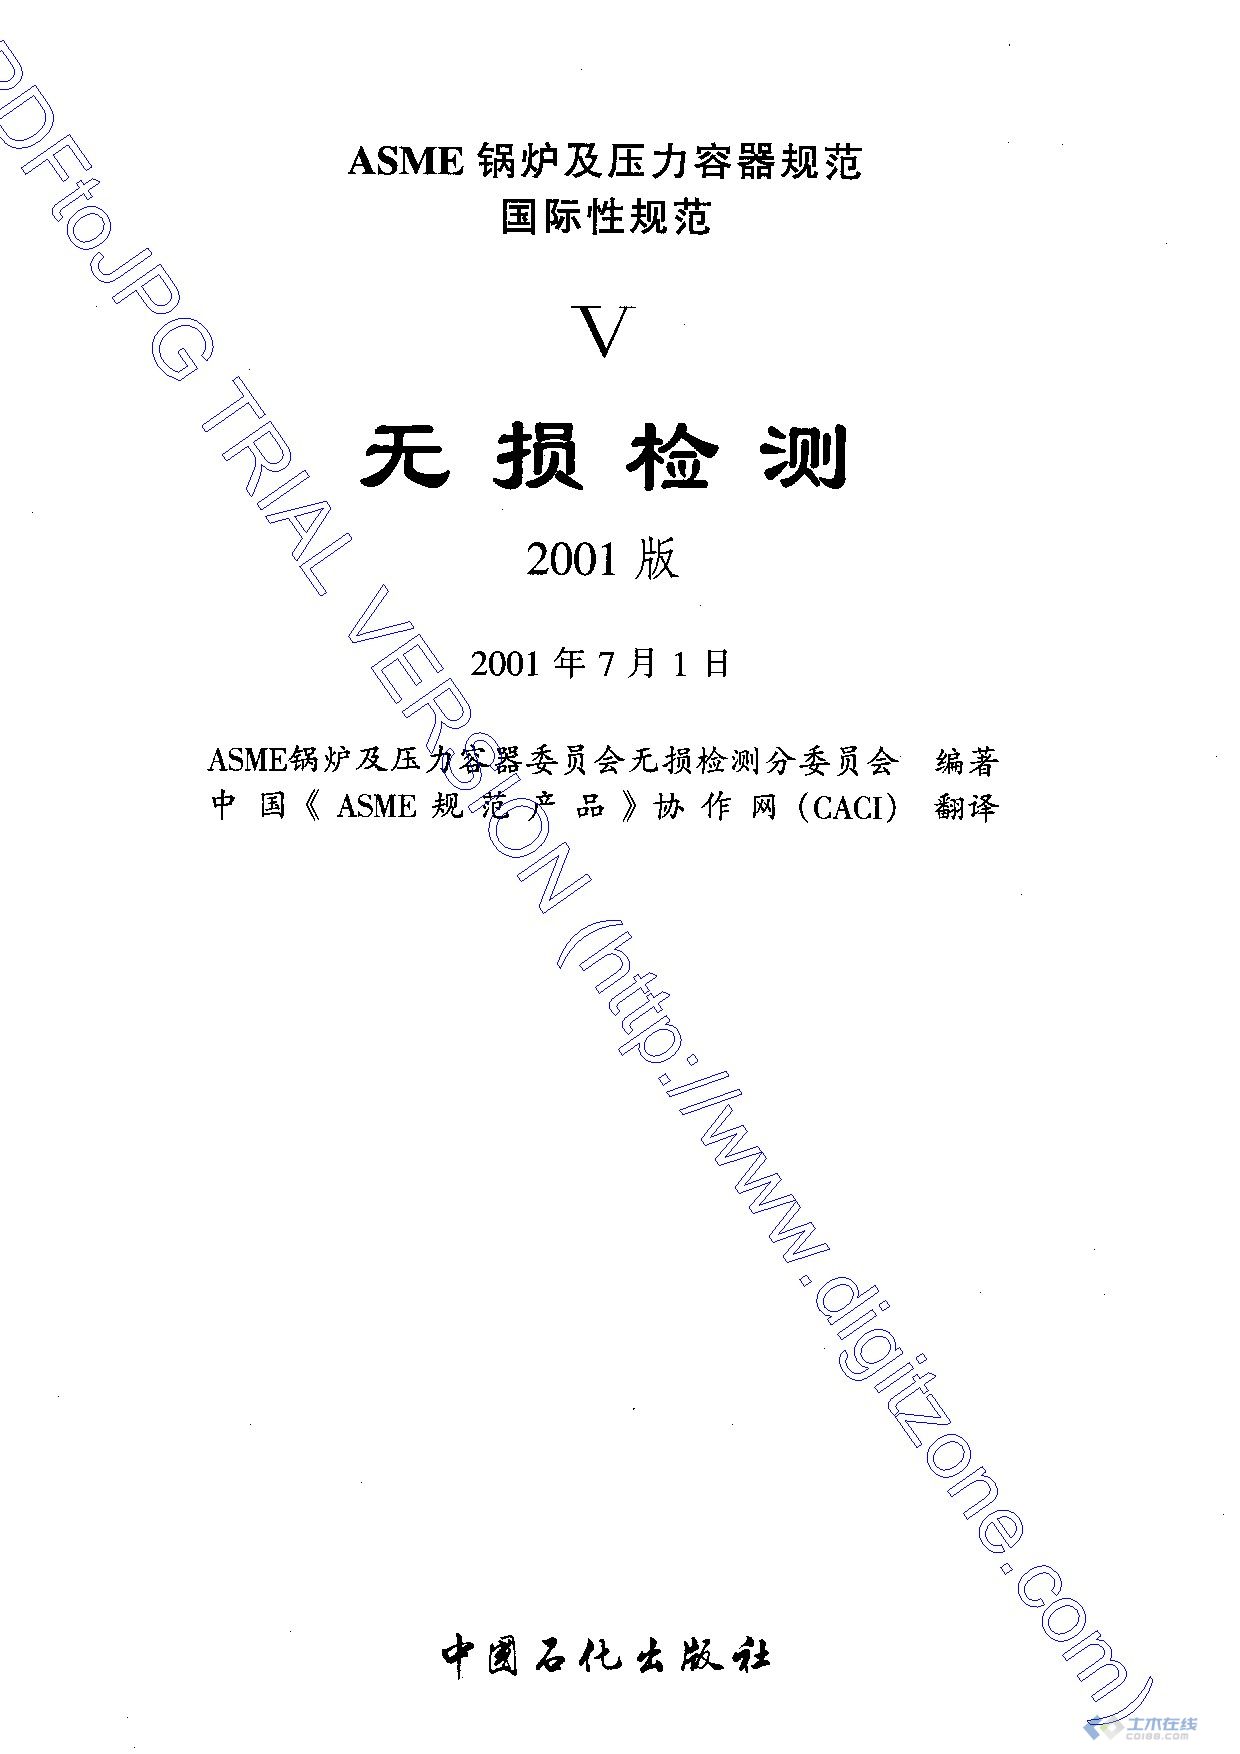 ASME V-2001 无损检测规范(中文版).jpg